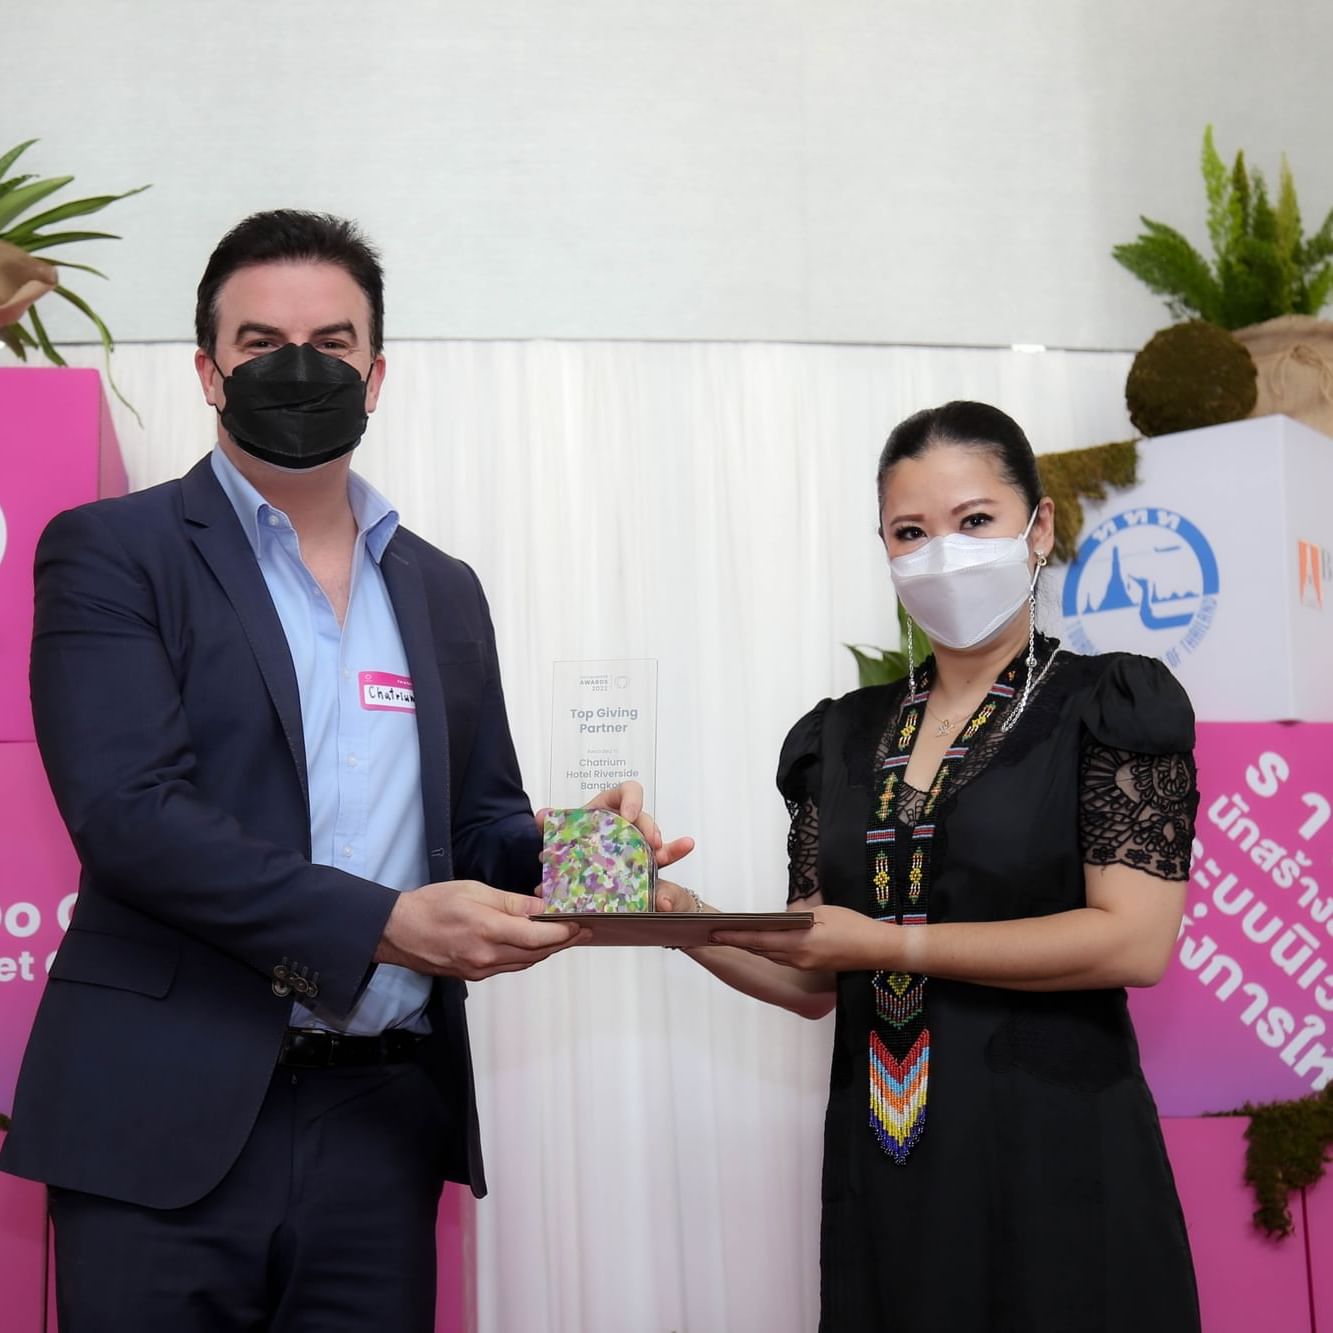 Presenting Socialgiver Awards 2022 at Chatrium Hotel Bangkok